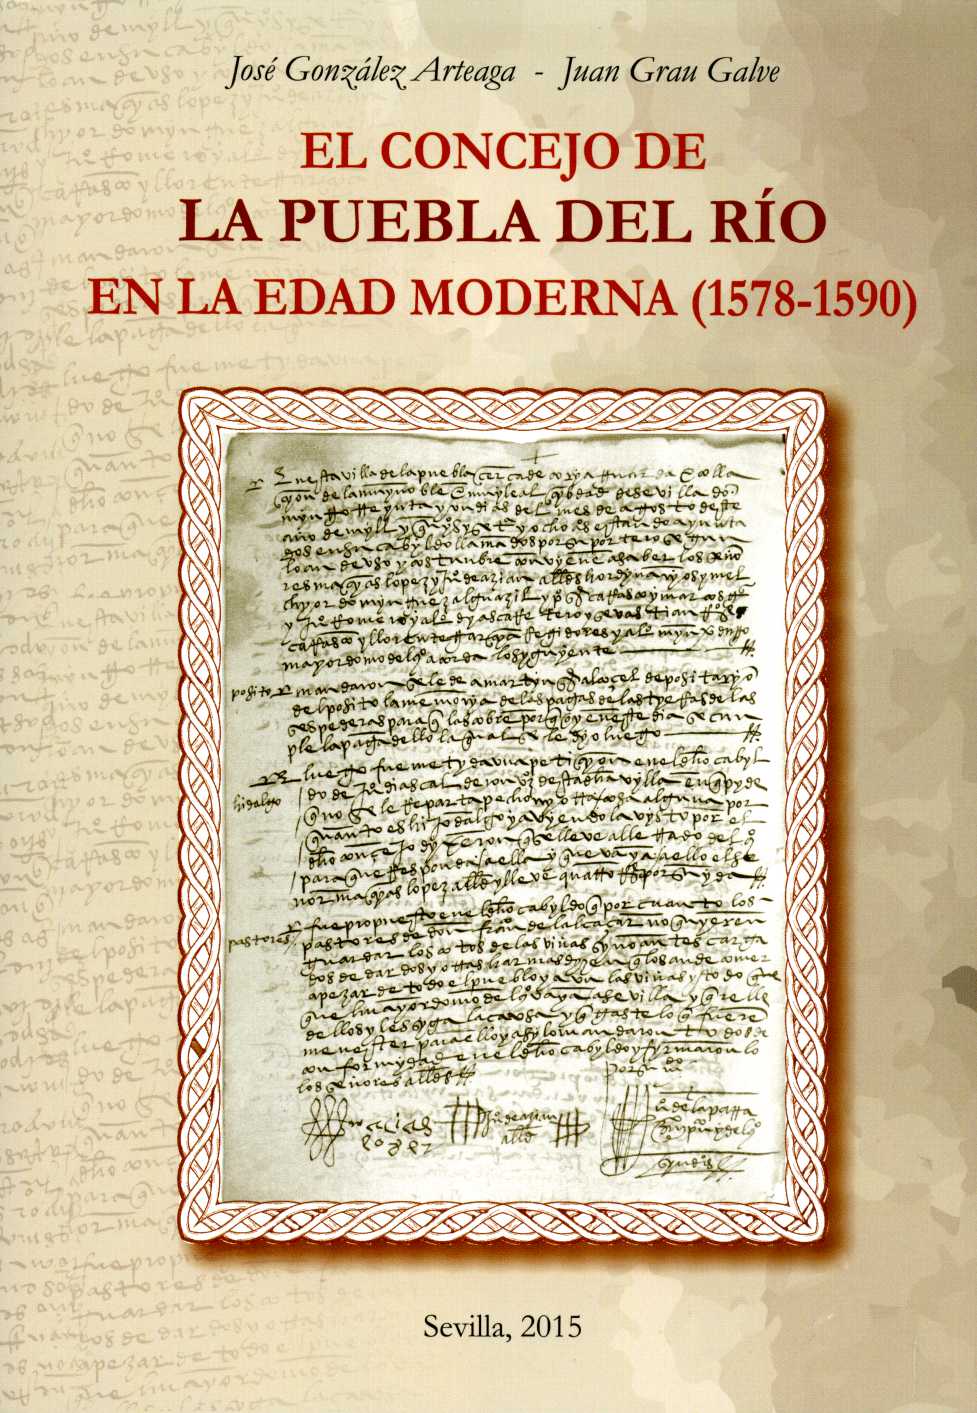 El Concejo de la Puebla del Río en la Edad Moderna (1578-1590)